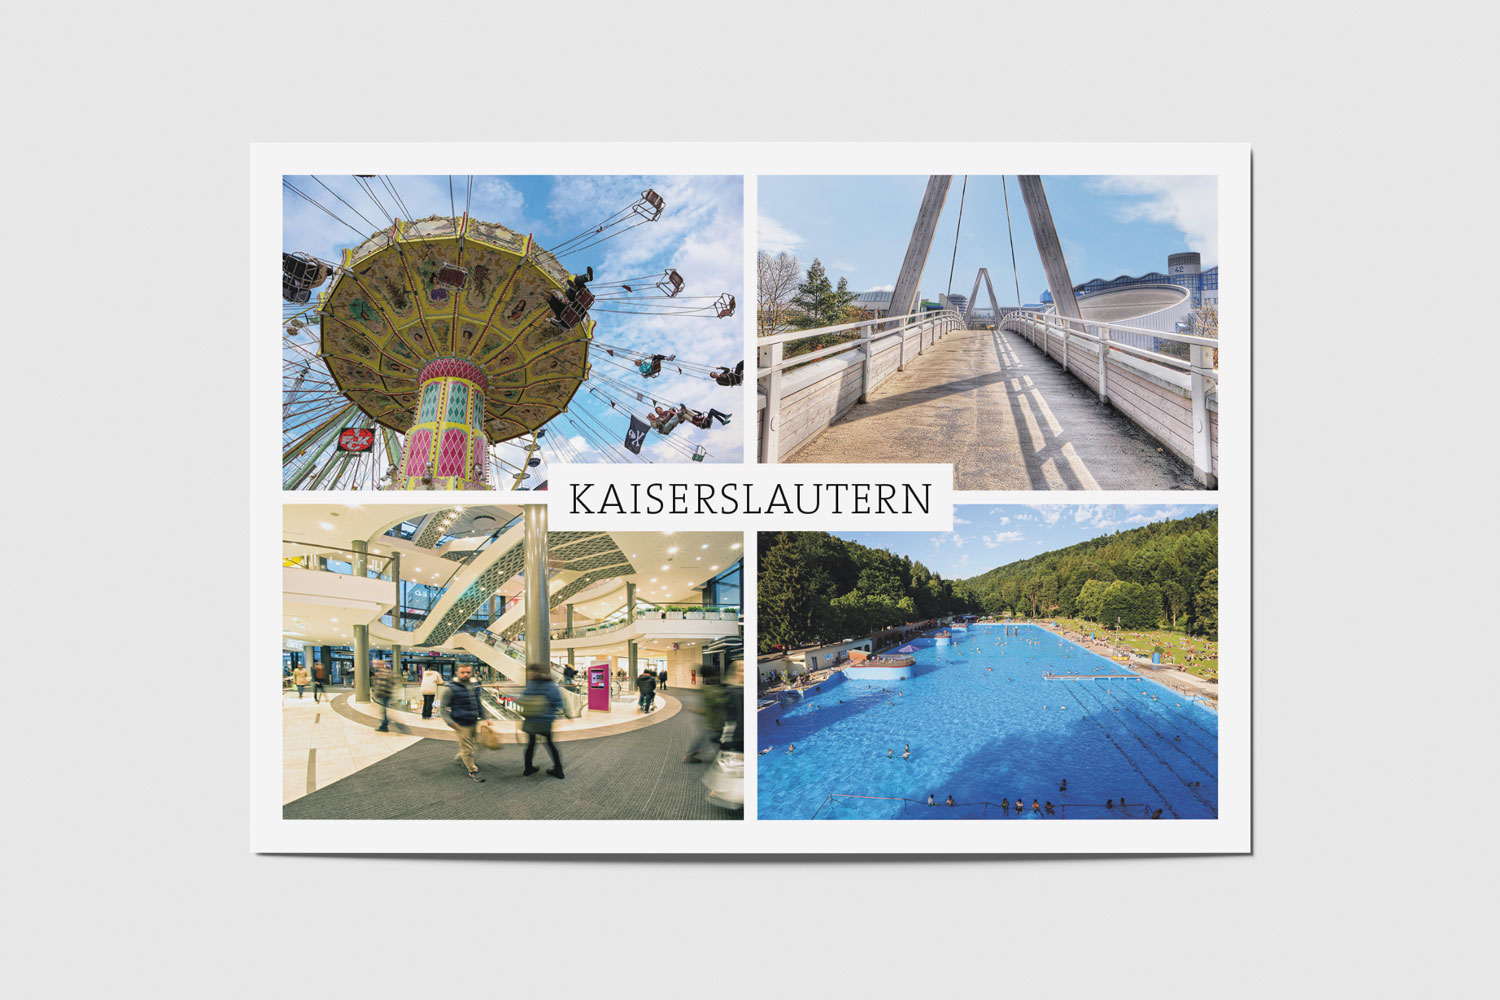 Kaiserslautern: Kerwe, Unibrücke, K in Lautern, Waschmühle